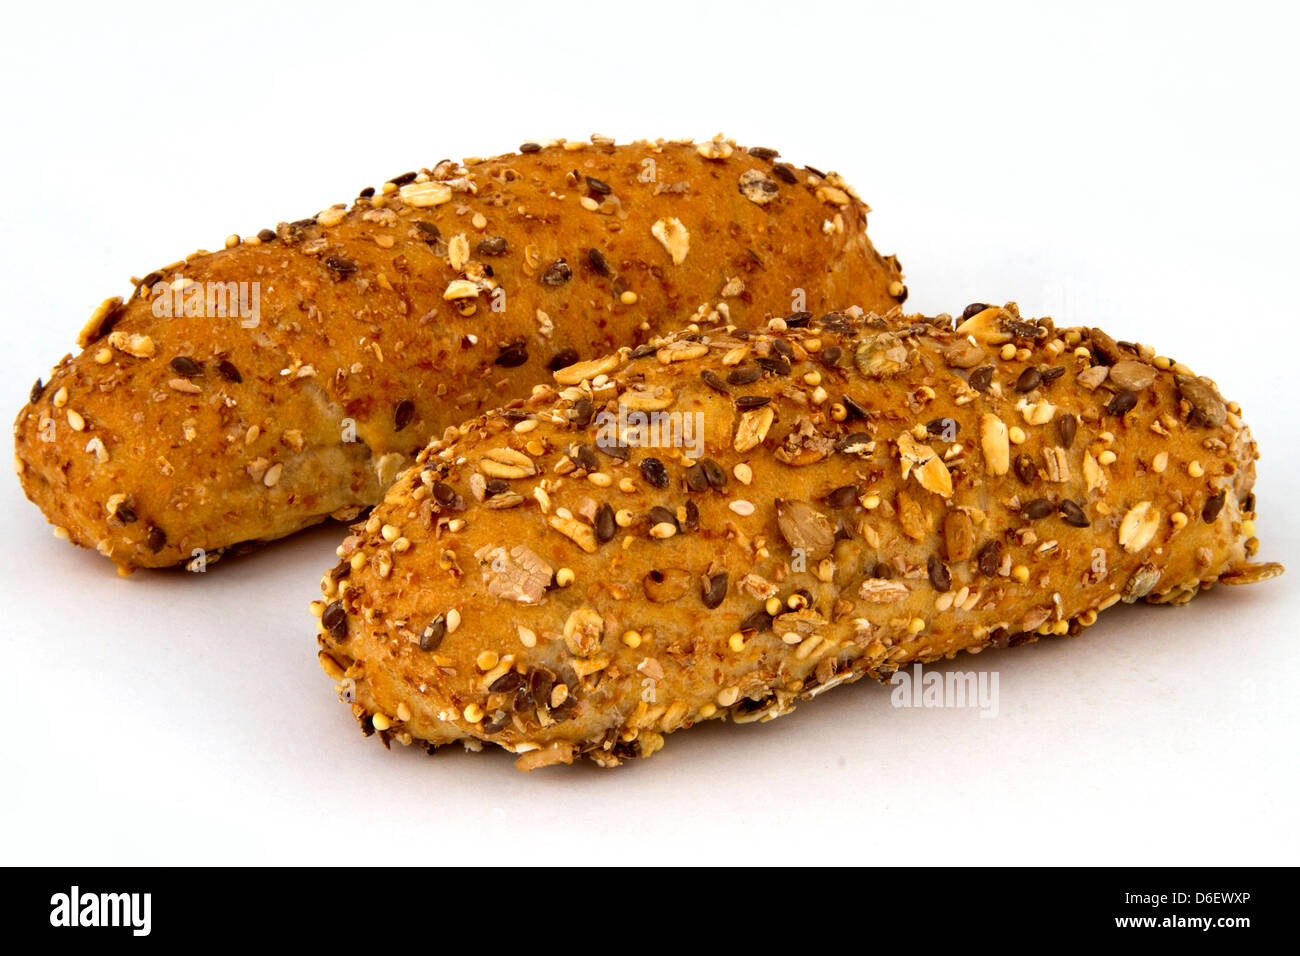 Multigrain Whole Wheat sandwich rolls Stock Photo